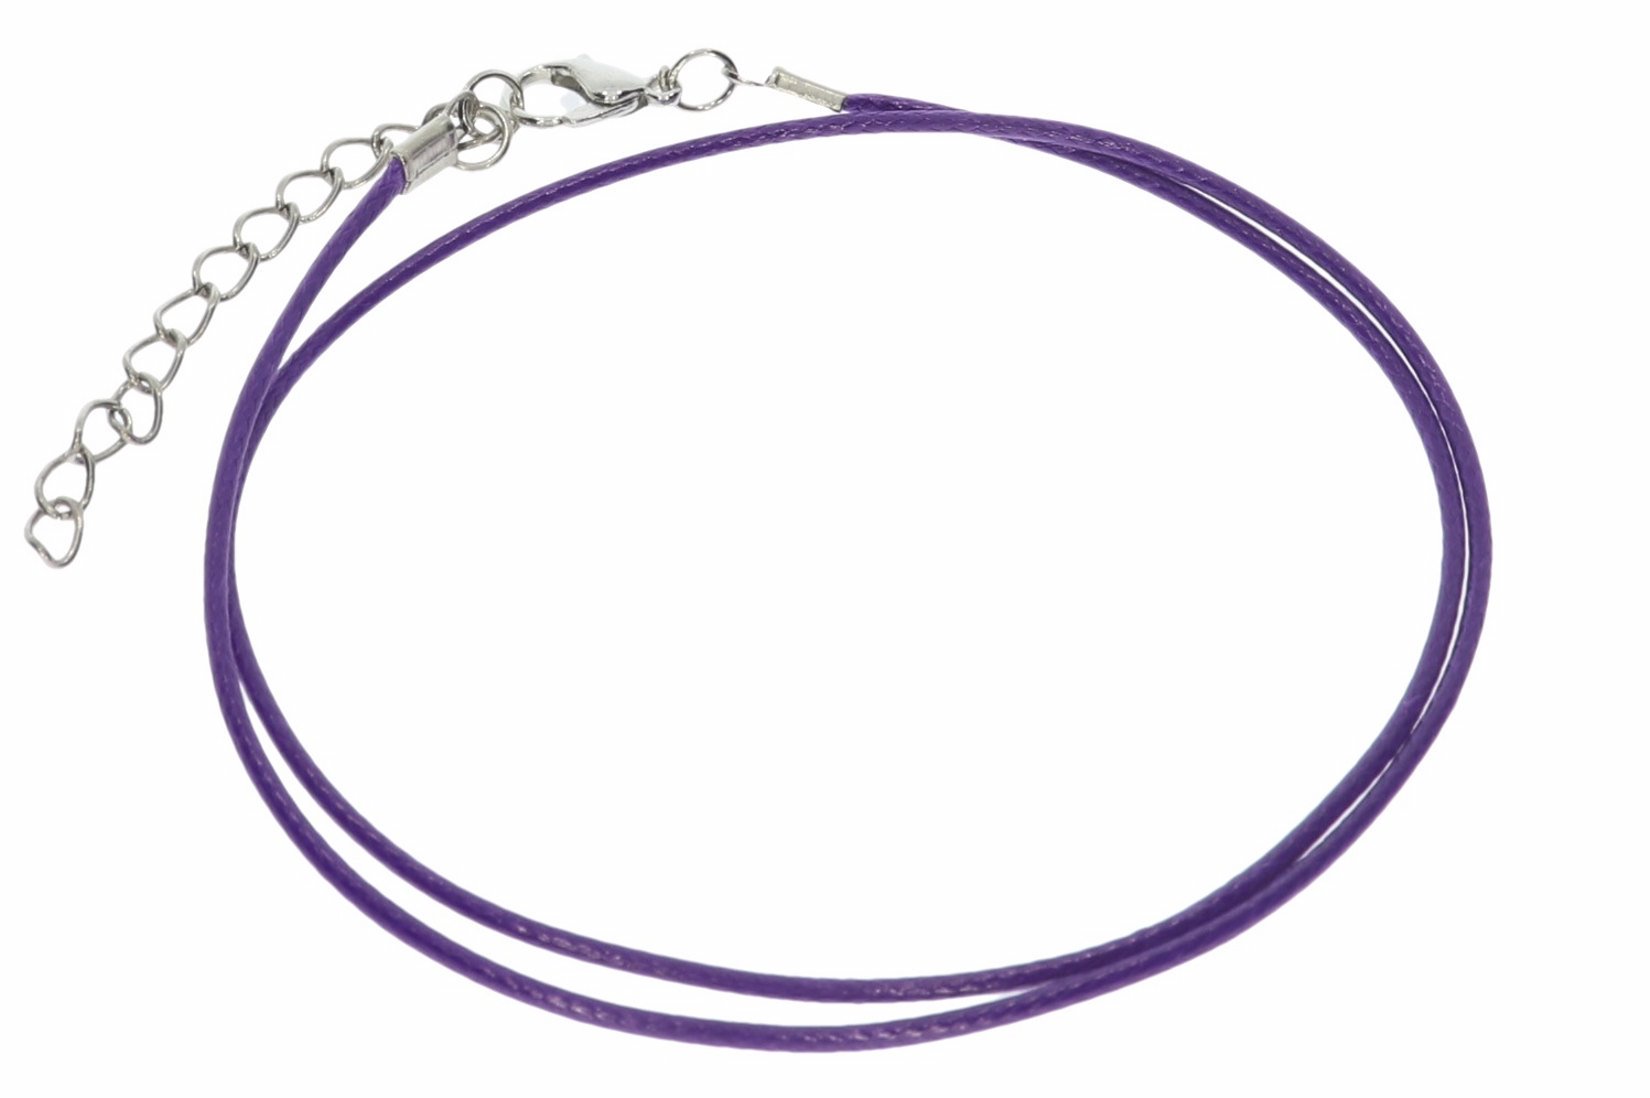 Violett - Baumwollband Halskette mit Edelstahl Karabiner 45-50cm - A241B